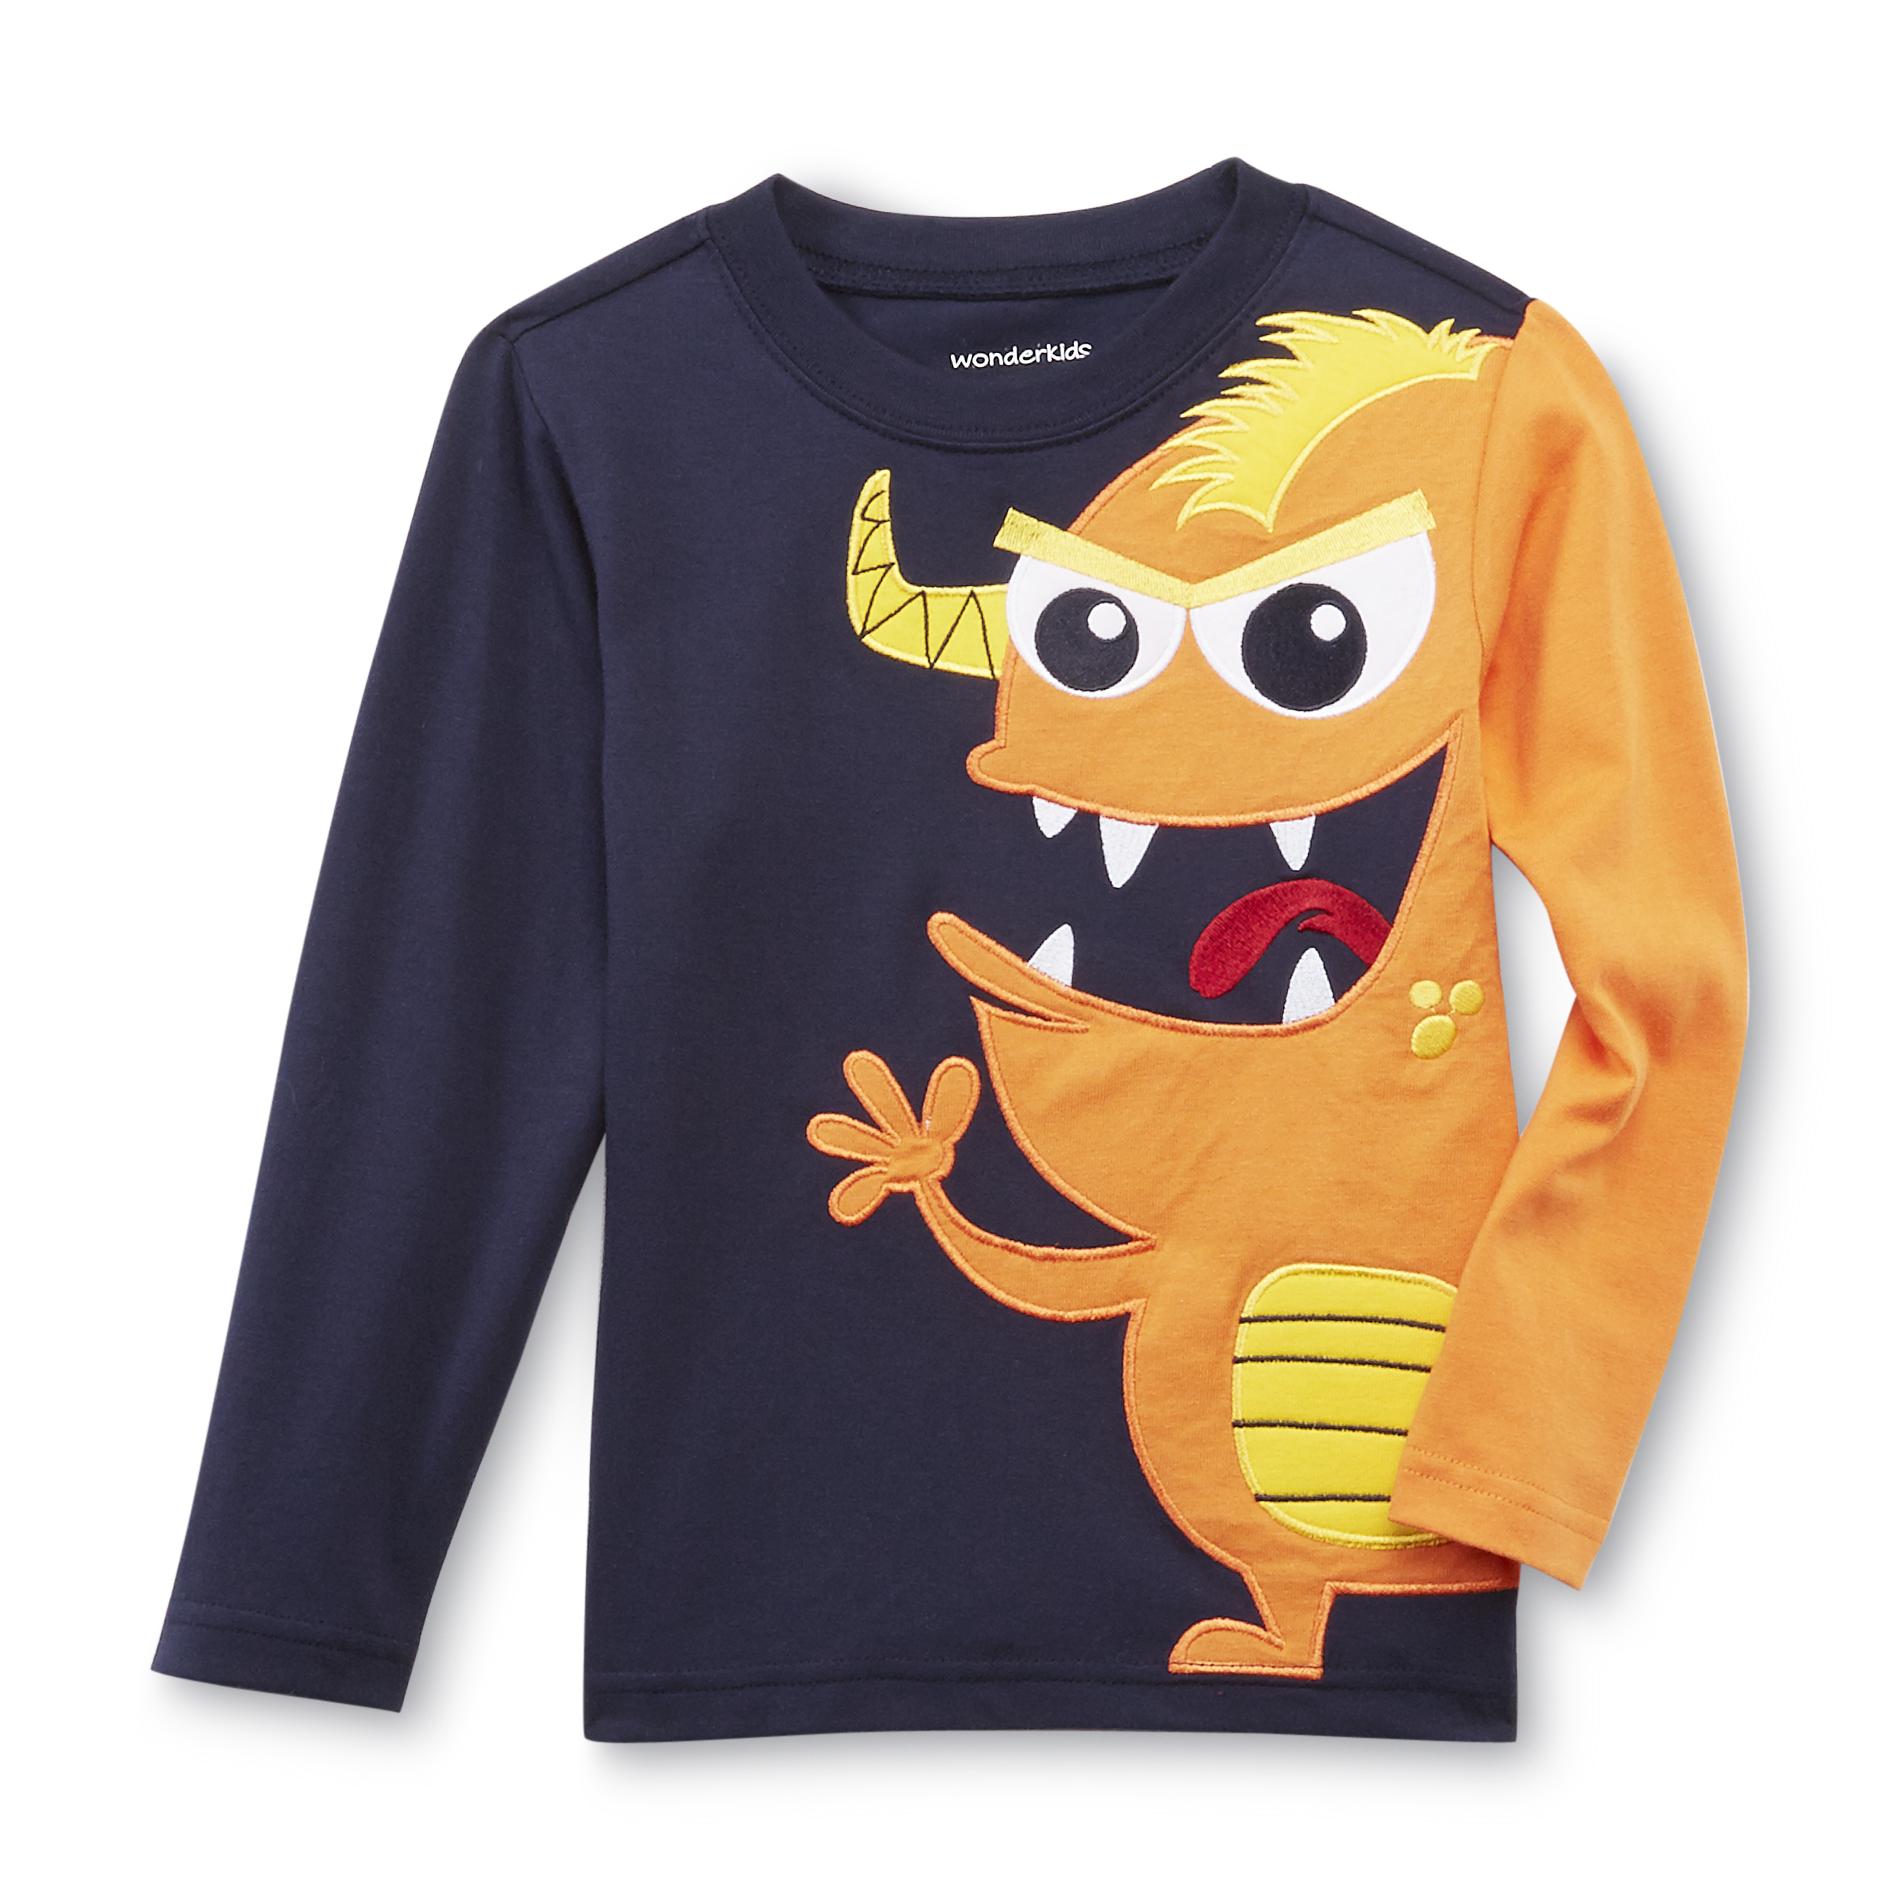 WonderKids Infant & Toddler Boy's Long-Sleeve T-Shirt - Monster